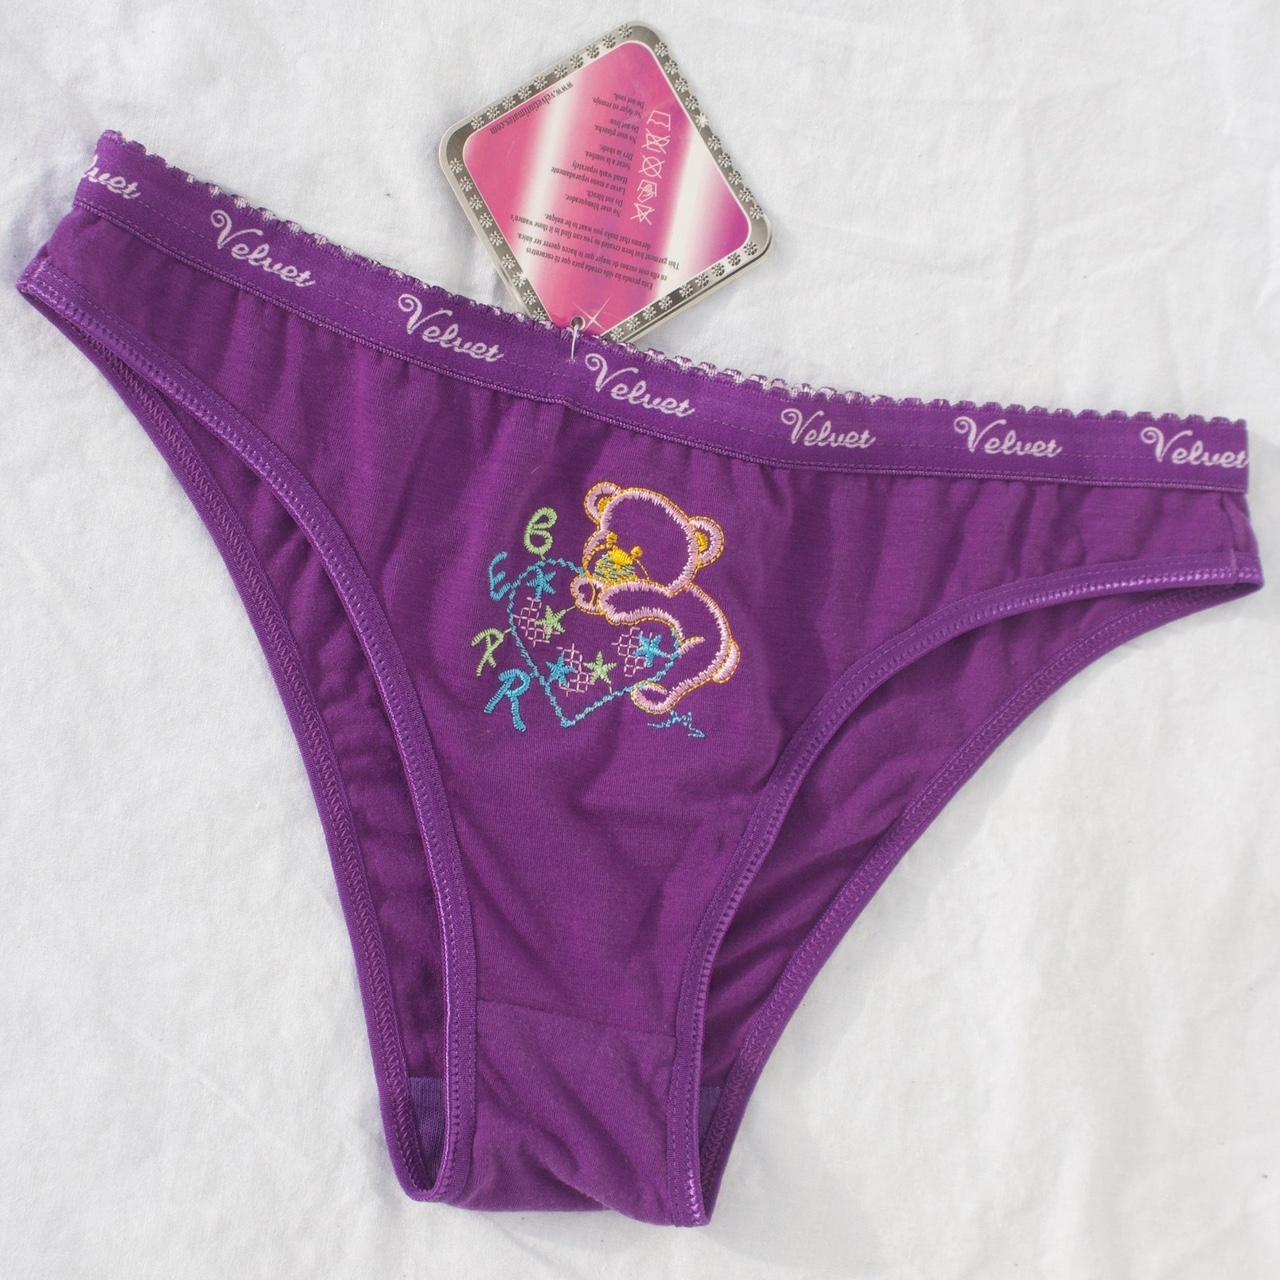 Velvet Women's Purple Panties